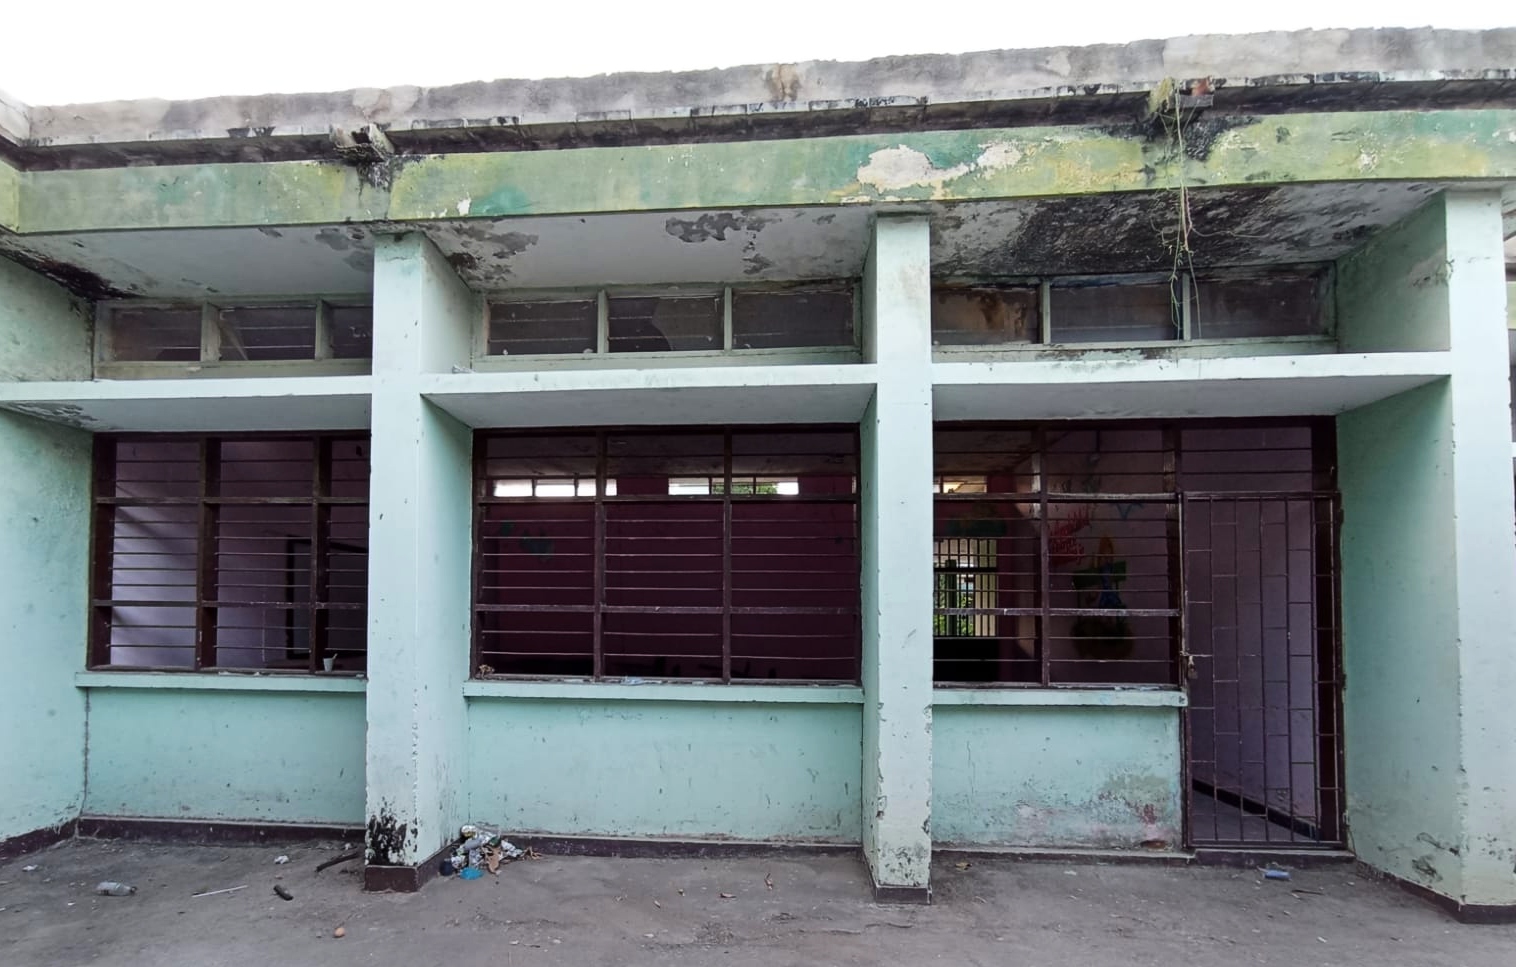 Salón del colegio Roig y Villalba clausurado por el riesgo de desplome del techo. Fotografía: María Fernanda Padilla Quevedo